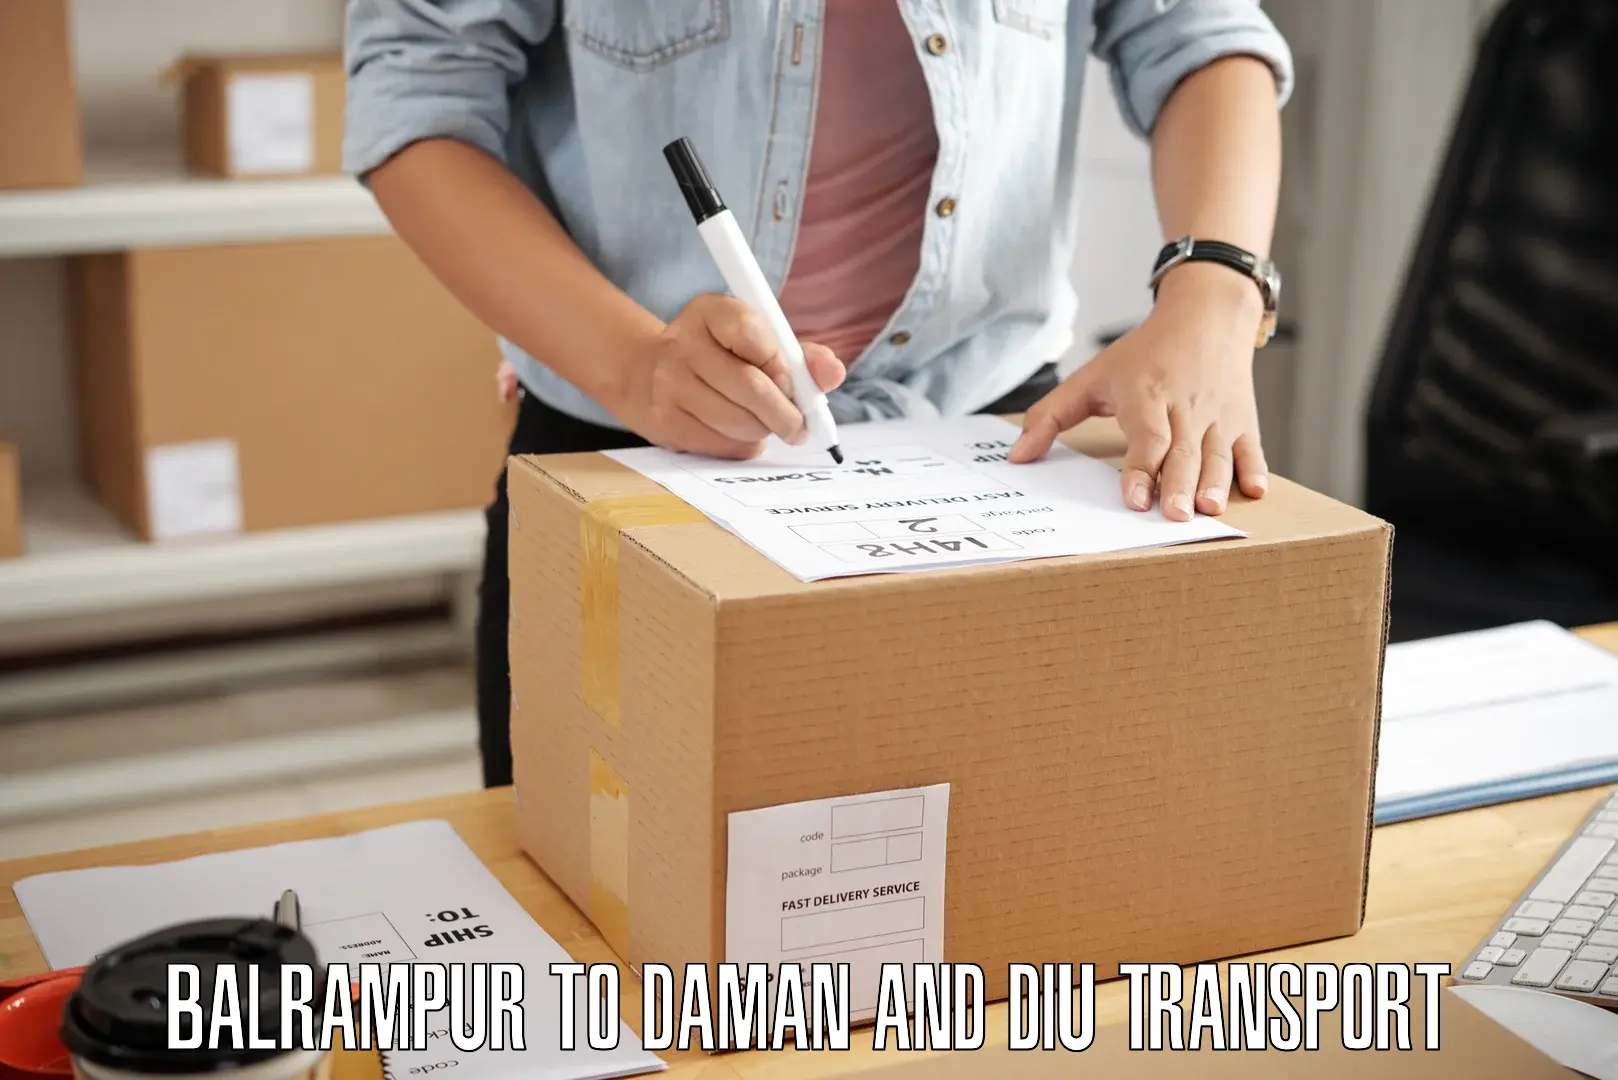 Pick up transport service Balrampur to Daman